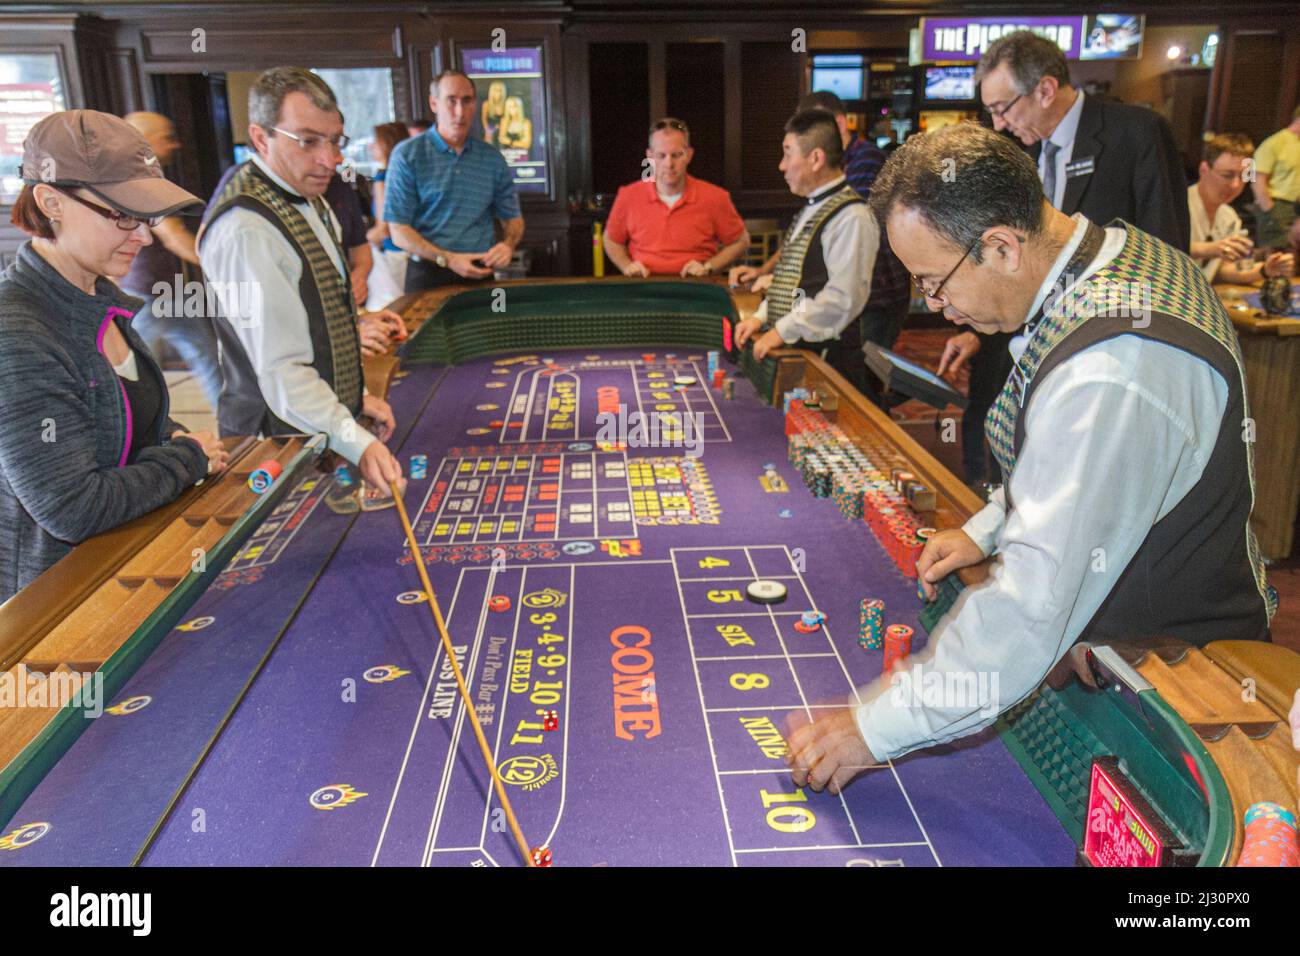 Las Vegas Nevada, Strip, South Boulevard Harrah's Hotel casino, juegos de azar, mesa de dados, empleados trabajadores boxman base dealer stickman hombres jugadores Foto de stock